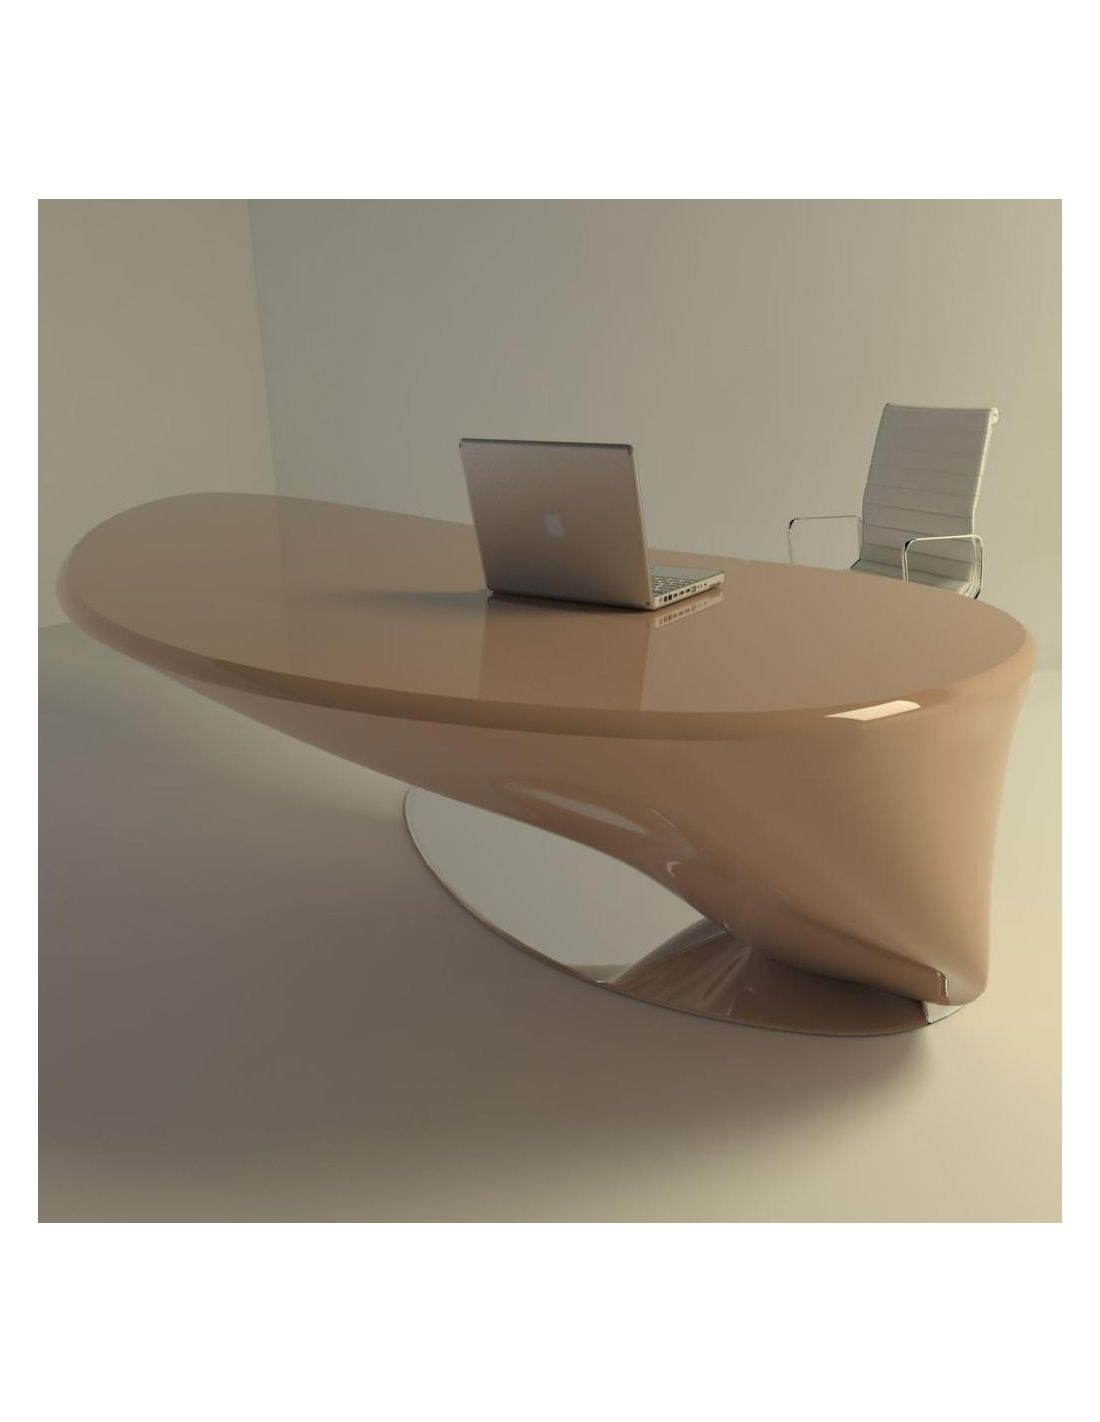 Atkinson tavolo scrivania per ufficio studio design moderno for Banconi per ufficio